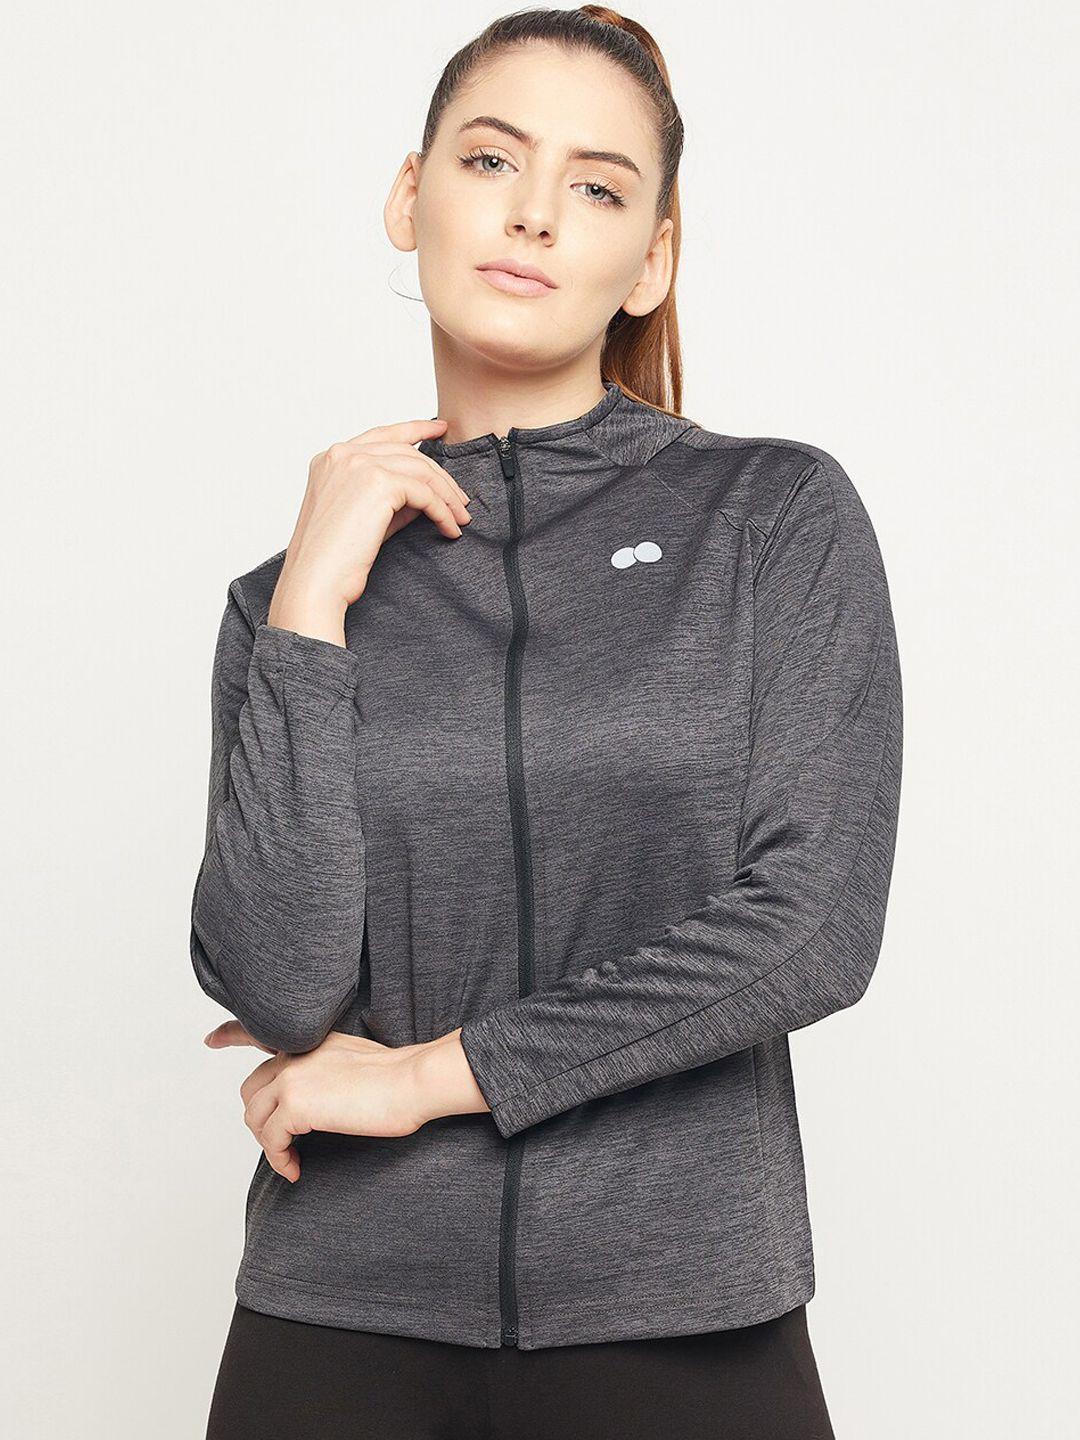 clovia women grey lightweight training or gym sporty jacket